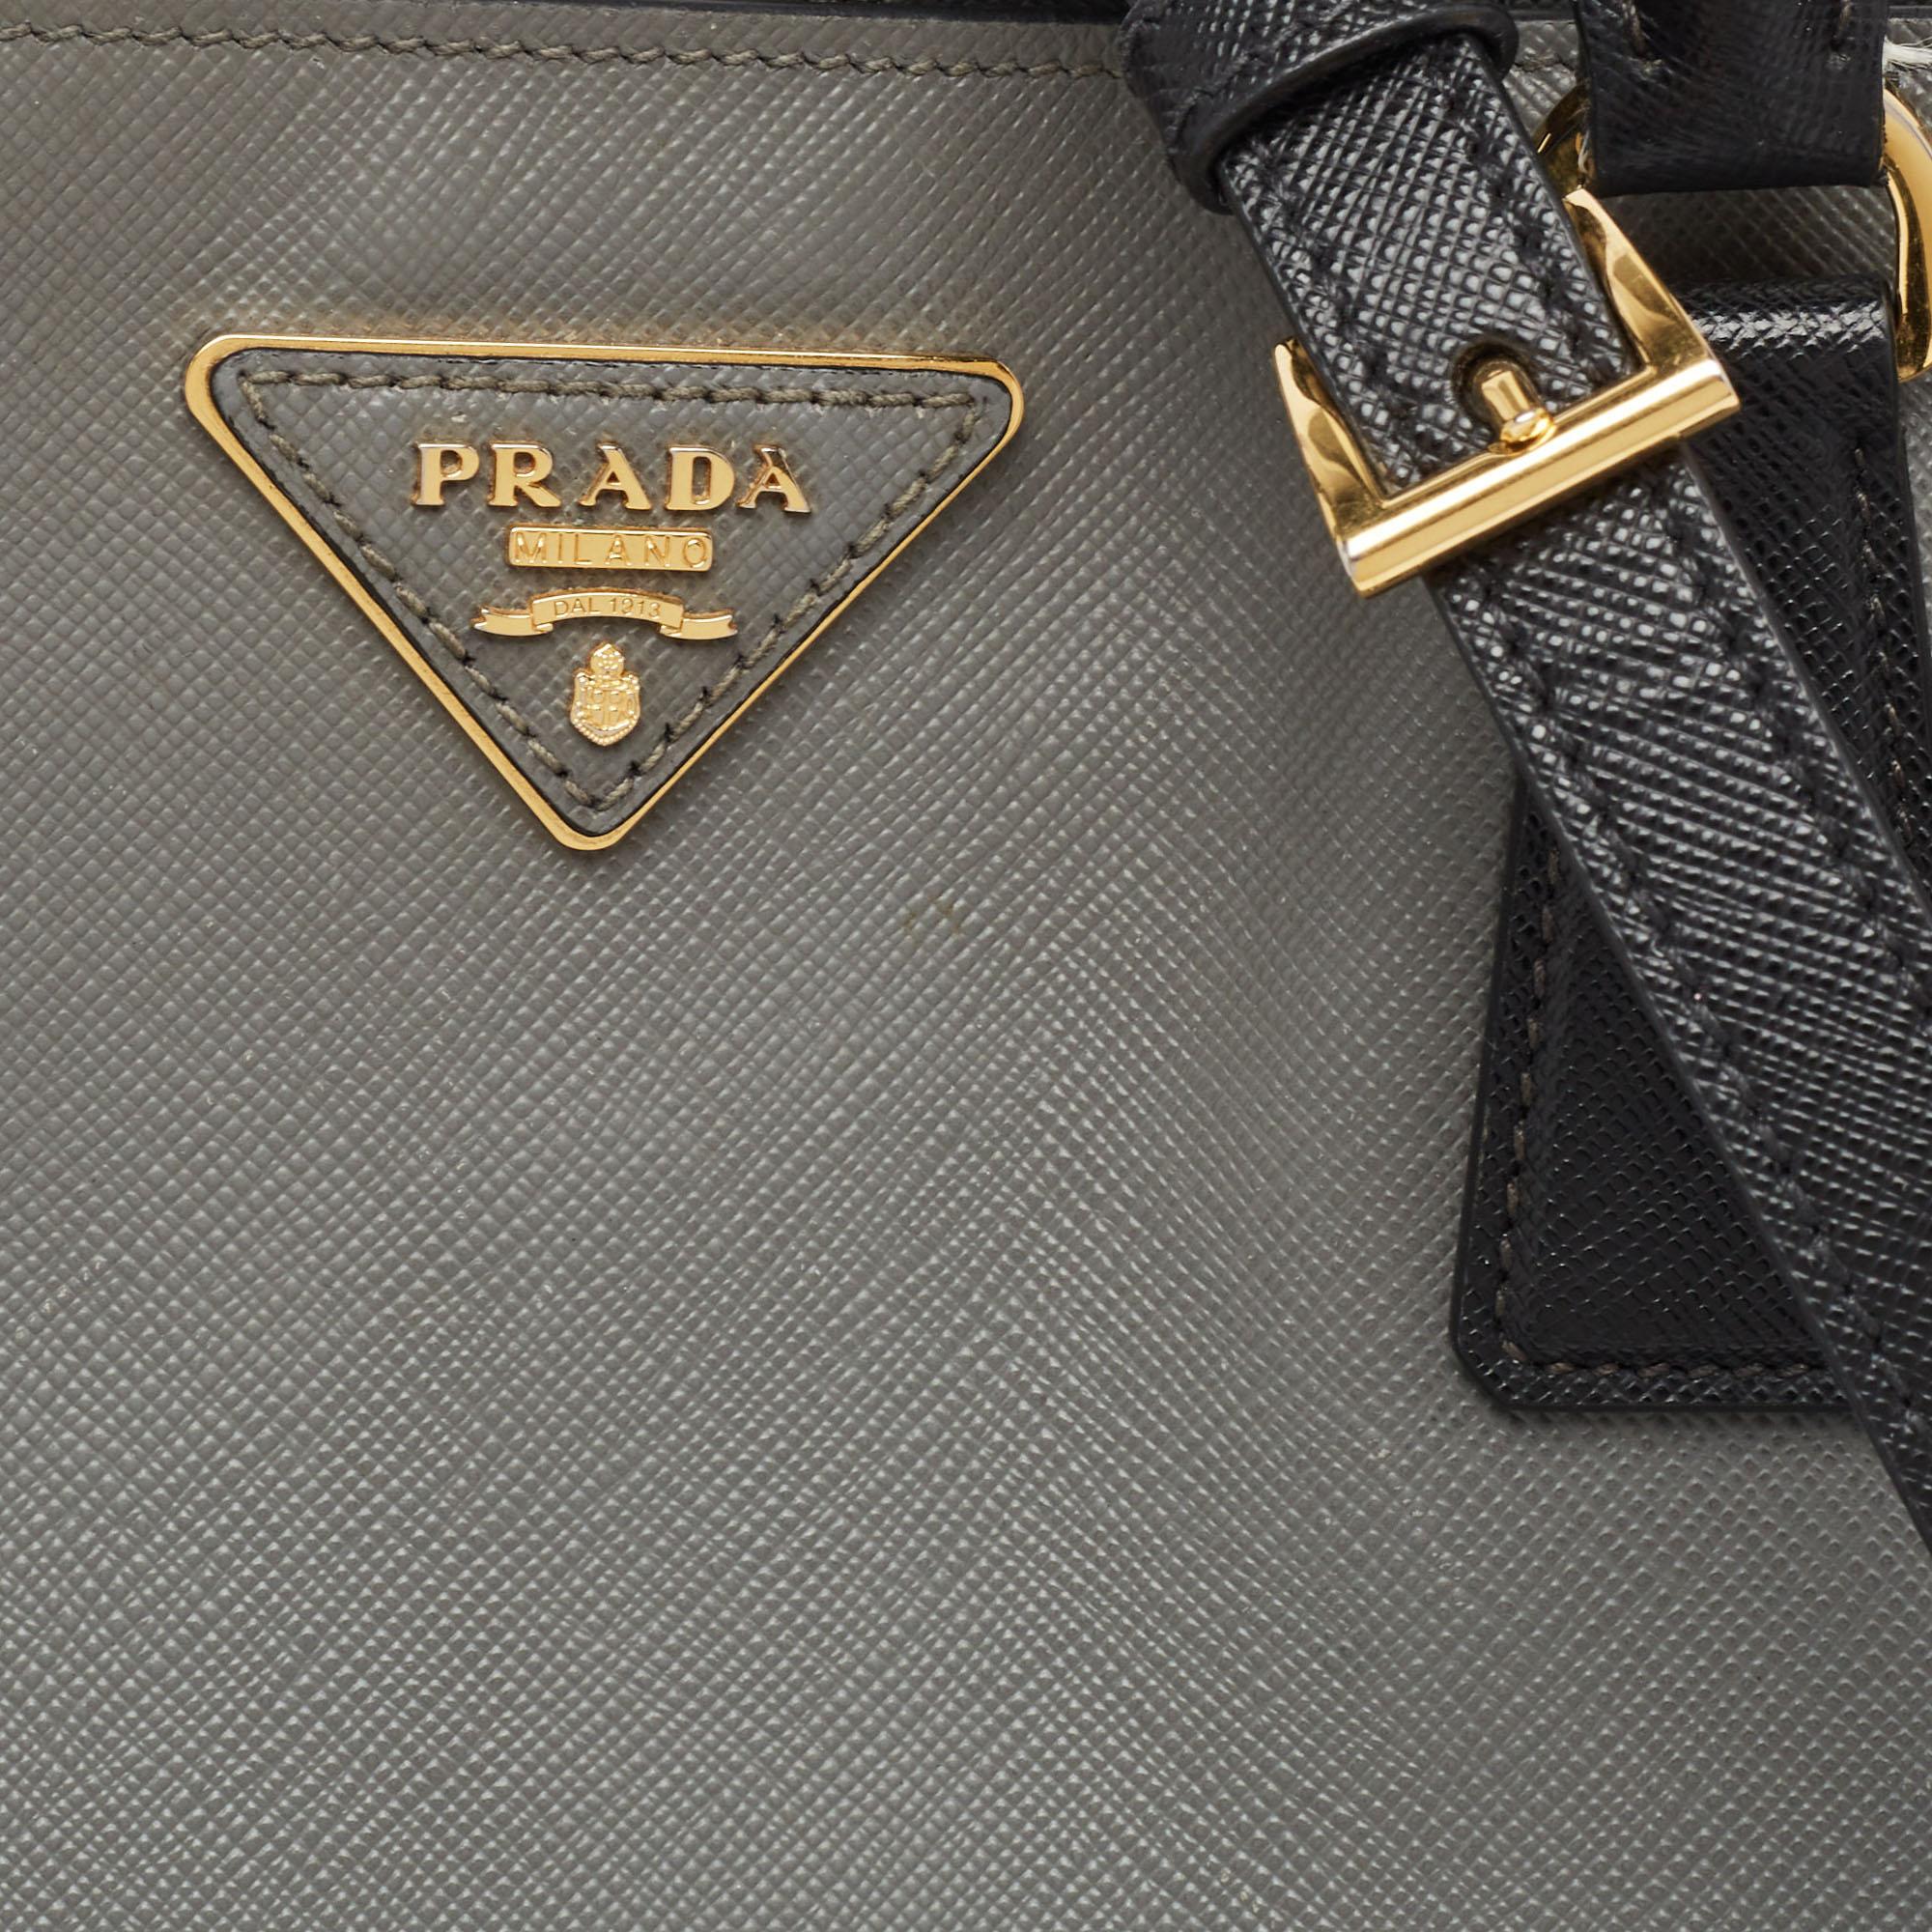 Prada Black/Grey Saffiano Lux Leather Colorblock Galleria Tote For Sale 10